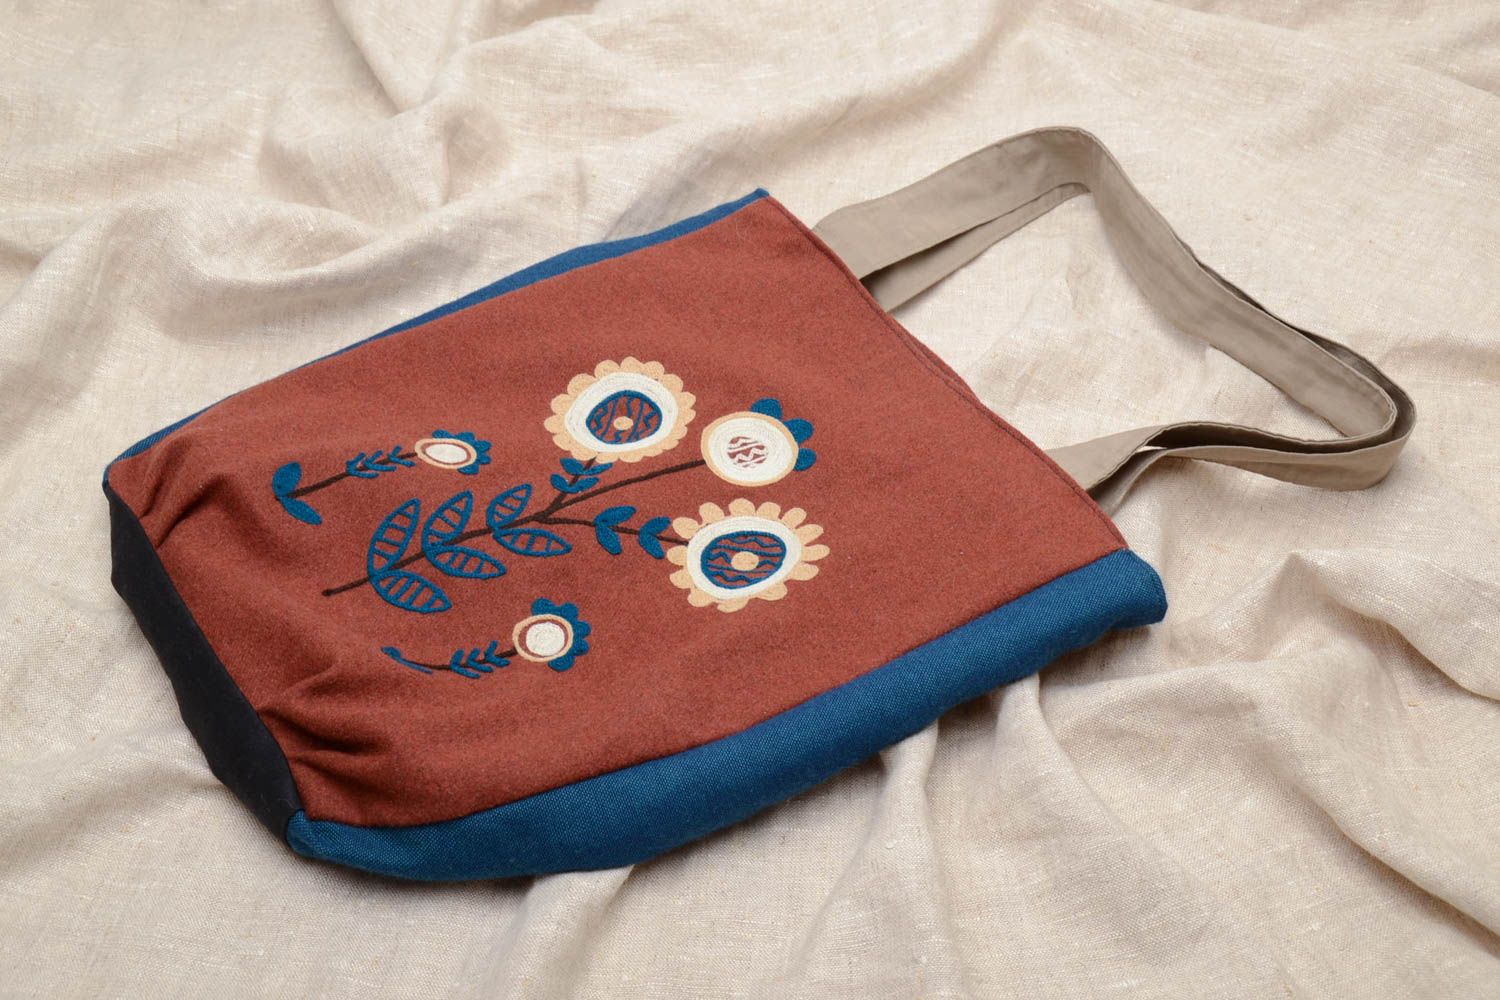 Textil Tasche in Braun foto 1